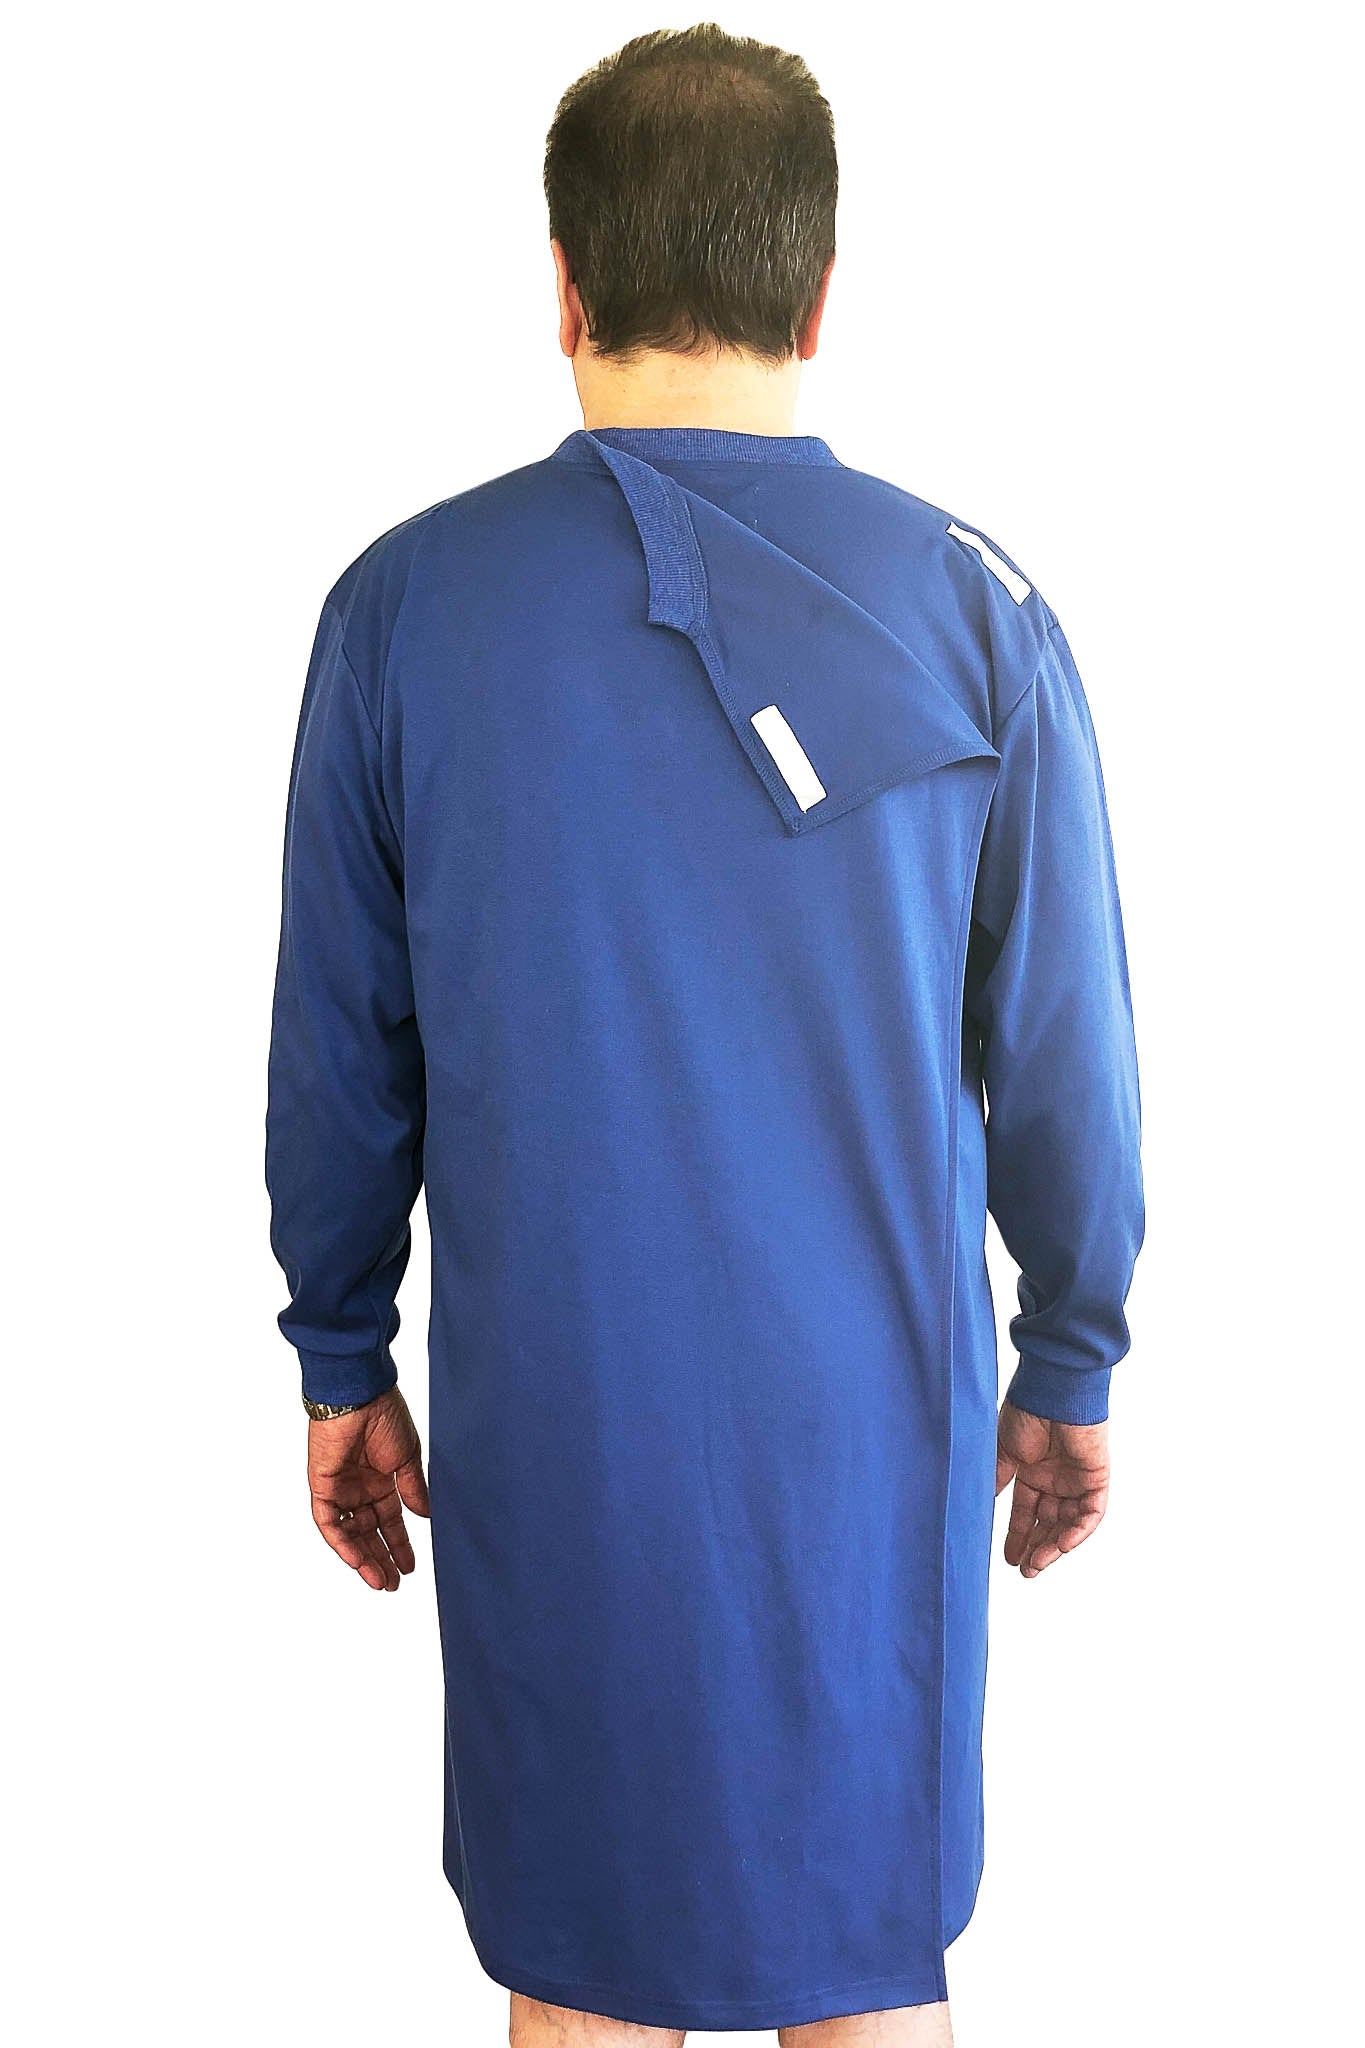 Nightshirt for Men - Blue | Felix | Adaptive Clothing by Ovidis